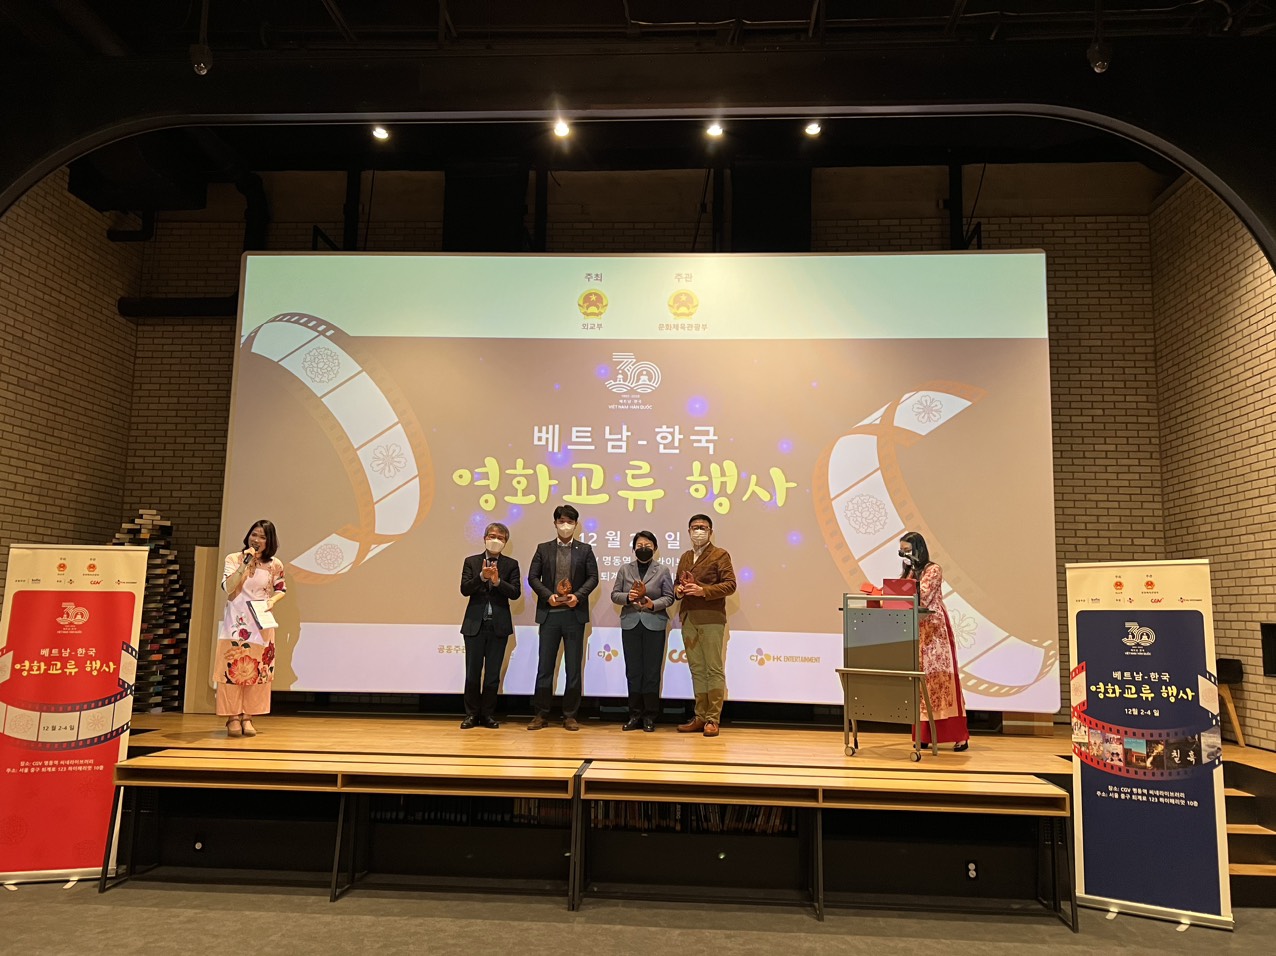 “Chương trình Giao lưu điện ảnh Việt Nam - Hàn Quốc” năm 2022 do Cục Điện ảnh (Bộ VHTTDL Việt Nam) phối hợp với Vụ Ngoại giao Văn hóa và UNESCO (Bộ Ngoại giao) và Hội đồng Điện ảnh Hàn Quốc (KOFIC) tổ chức tại Thủ đô Seoul đã diễn ra từ ngày 2 đến 4-12. 